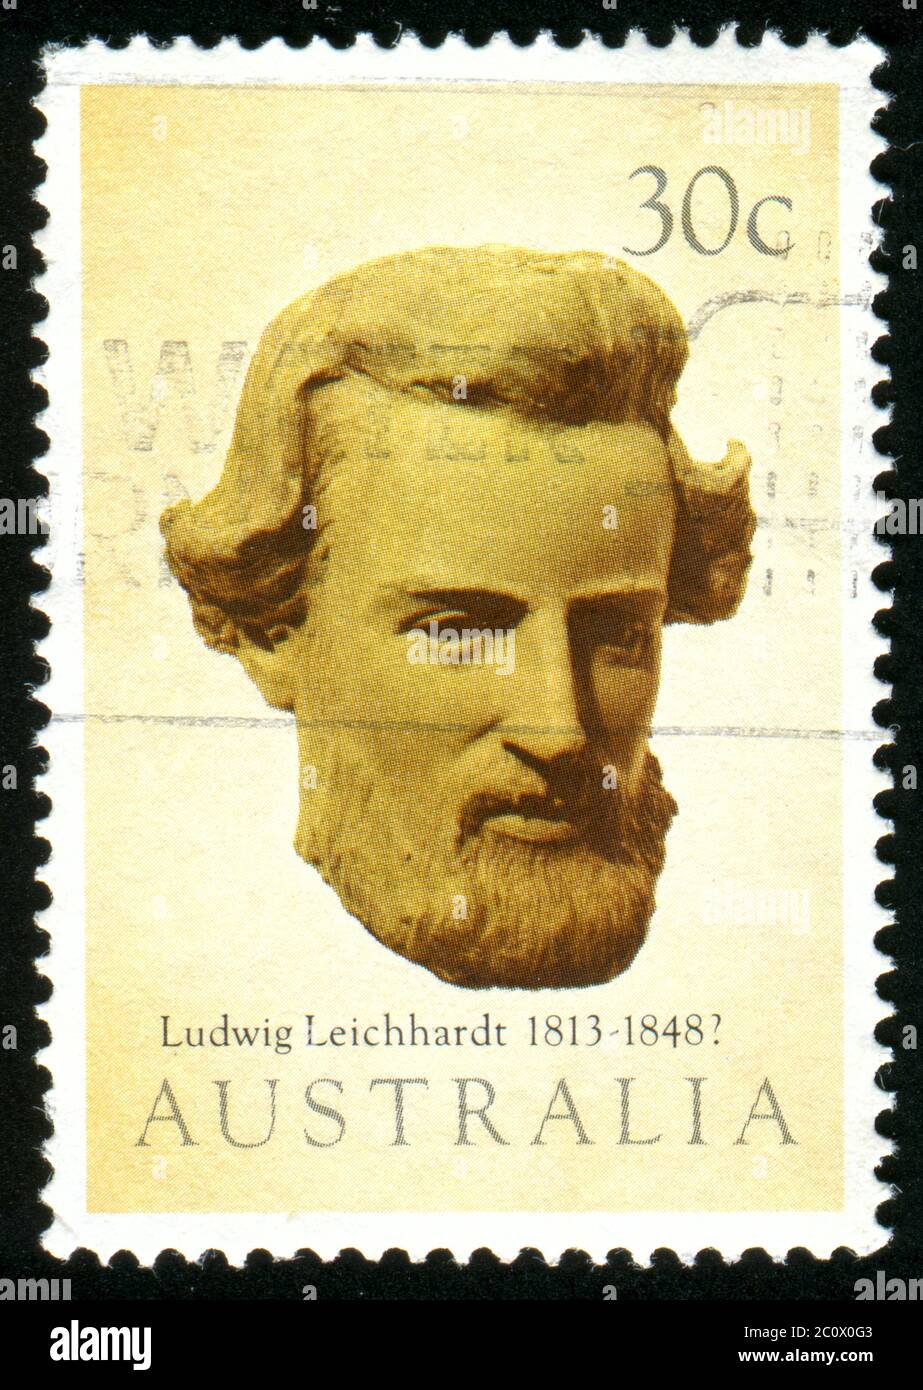 AUSTRALIA - CIRCA 1983: stamp printed by Australia, shows Ludwig Leichhardt, circa 1983 Stock Photo